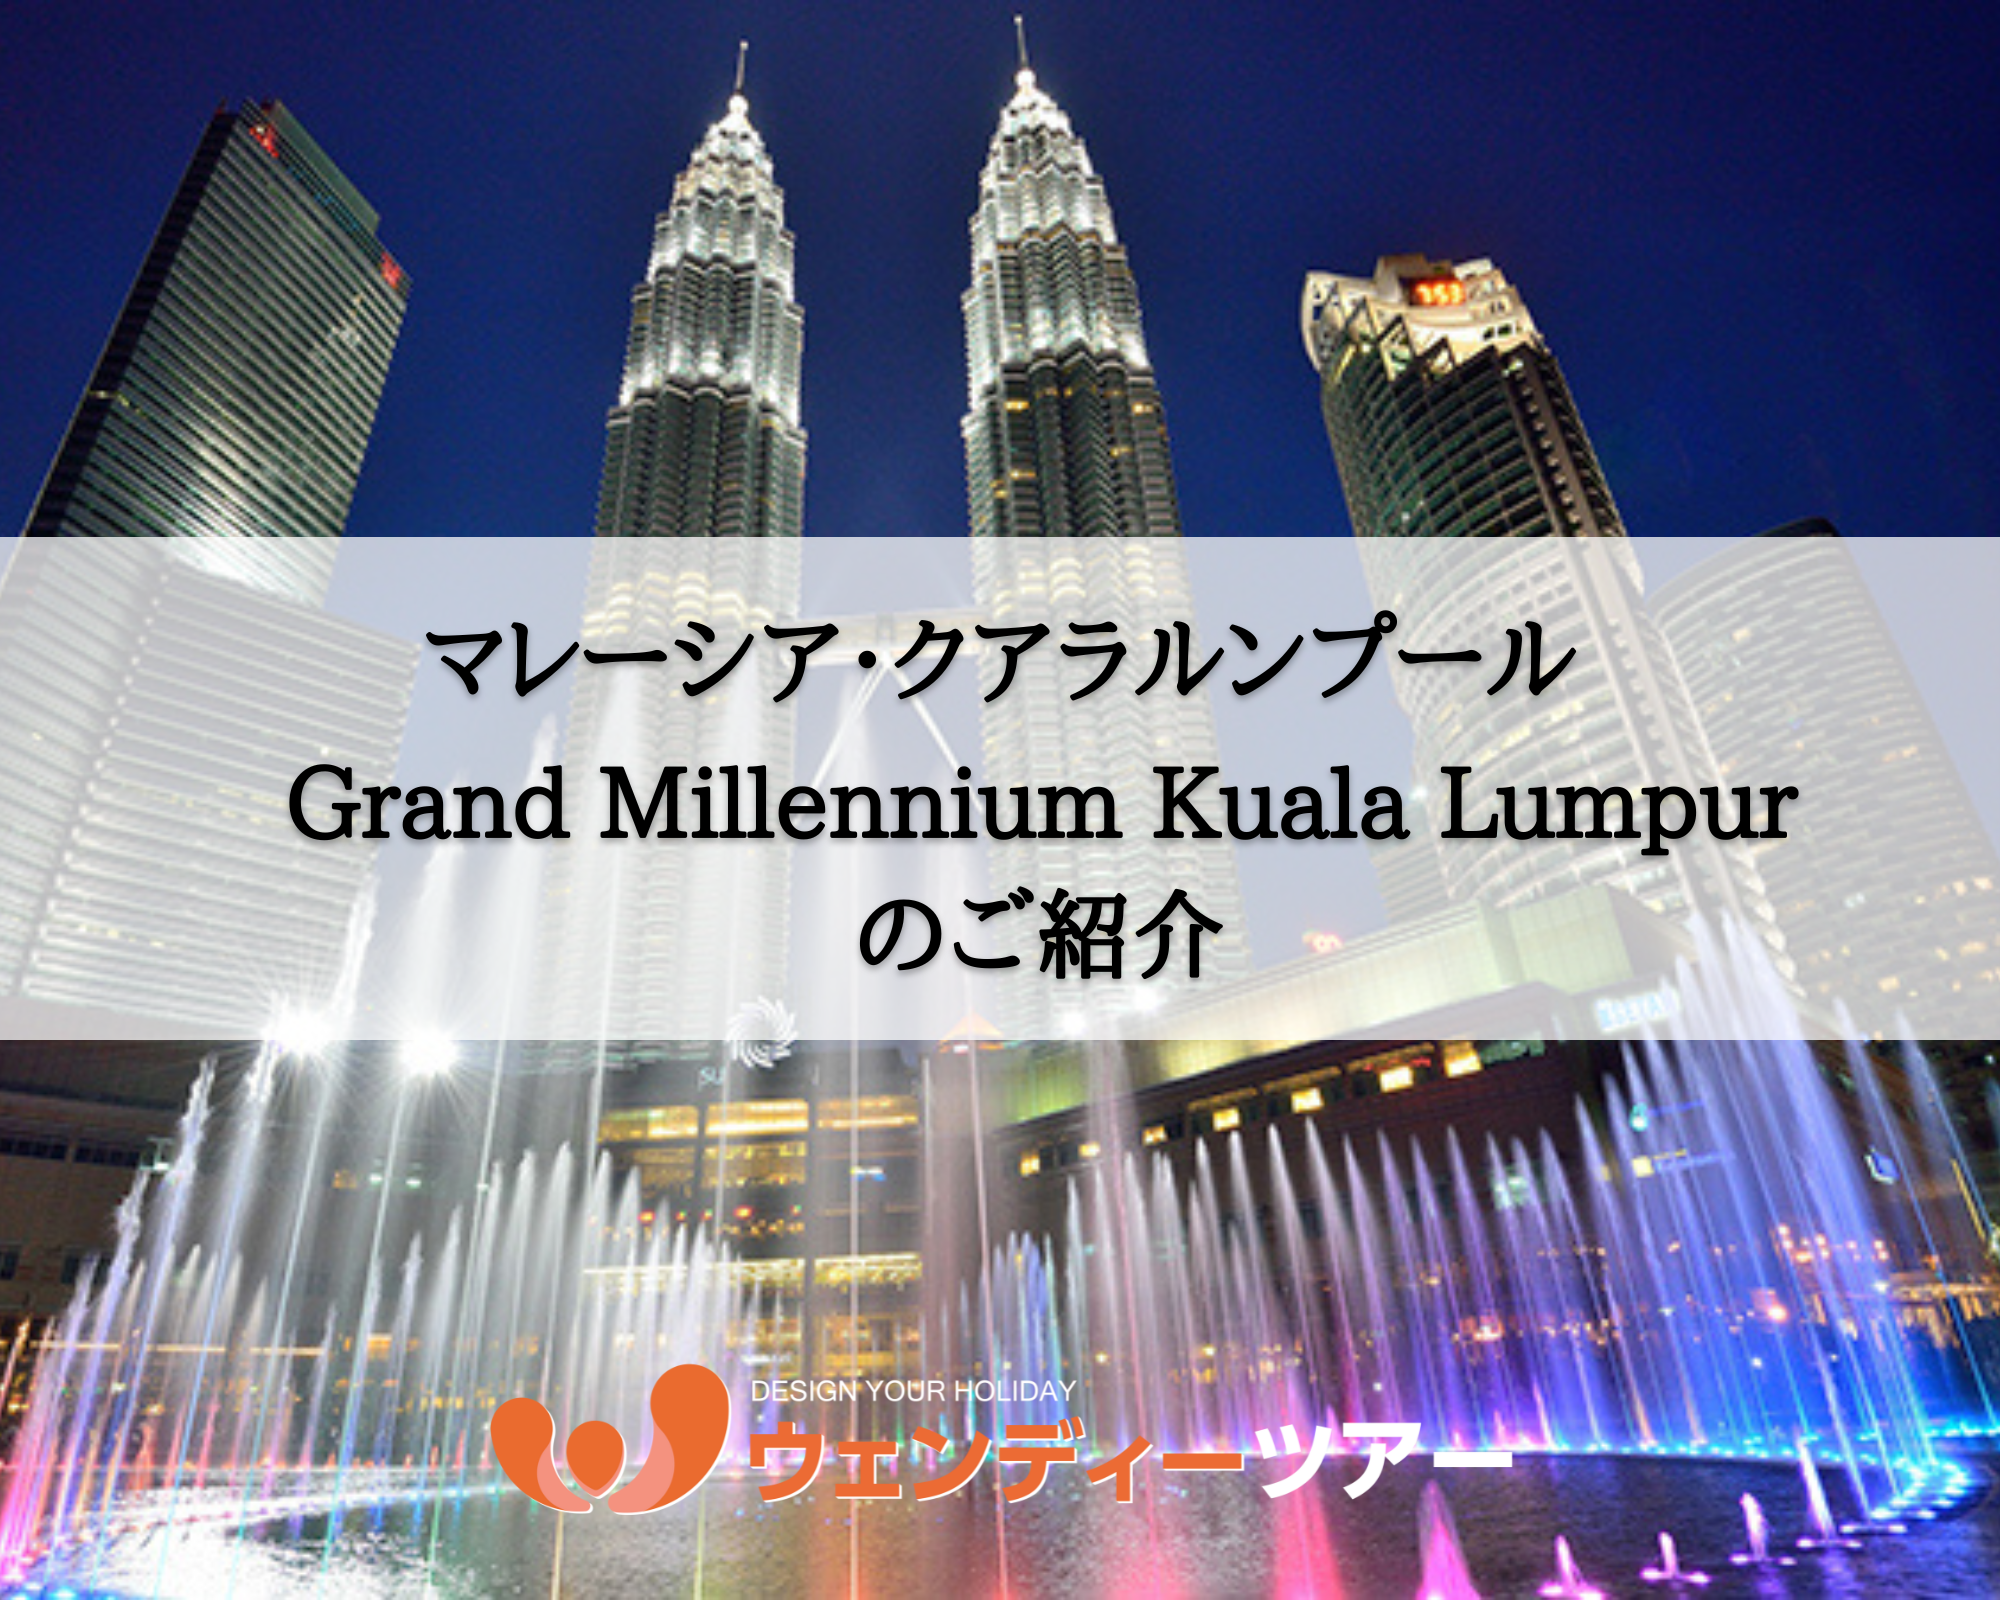 【マレーシア・クアラルンプール】Grand Millennium Kuala Lumpur